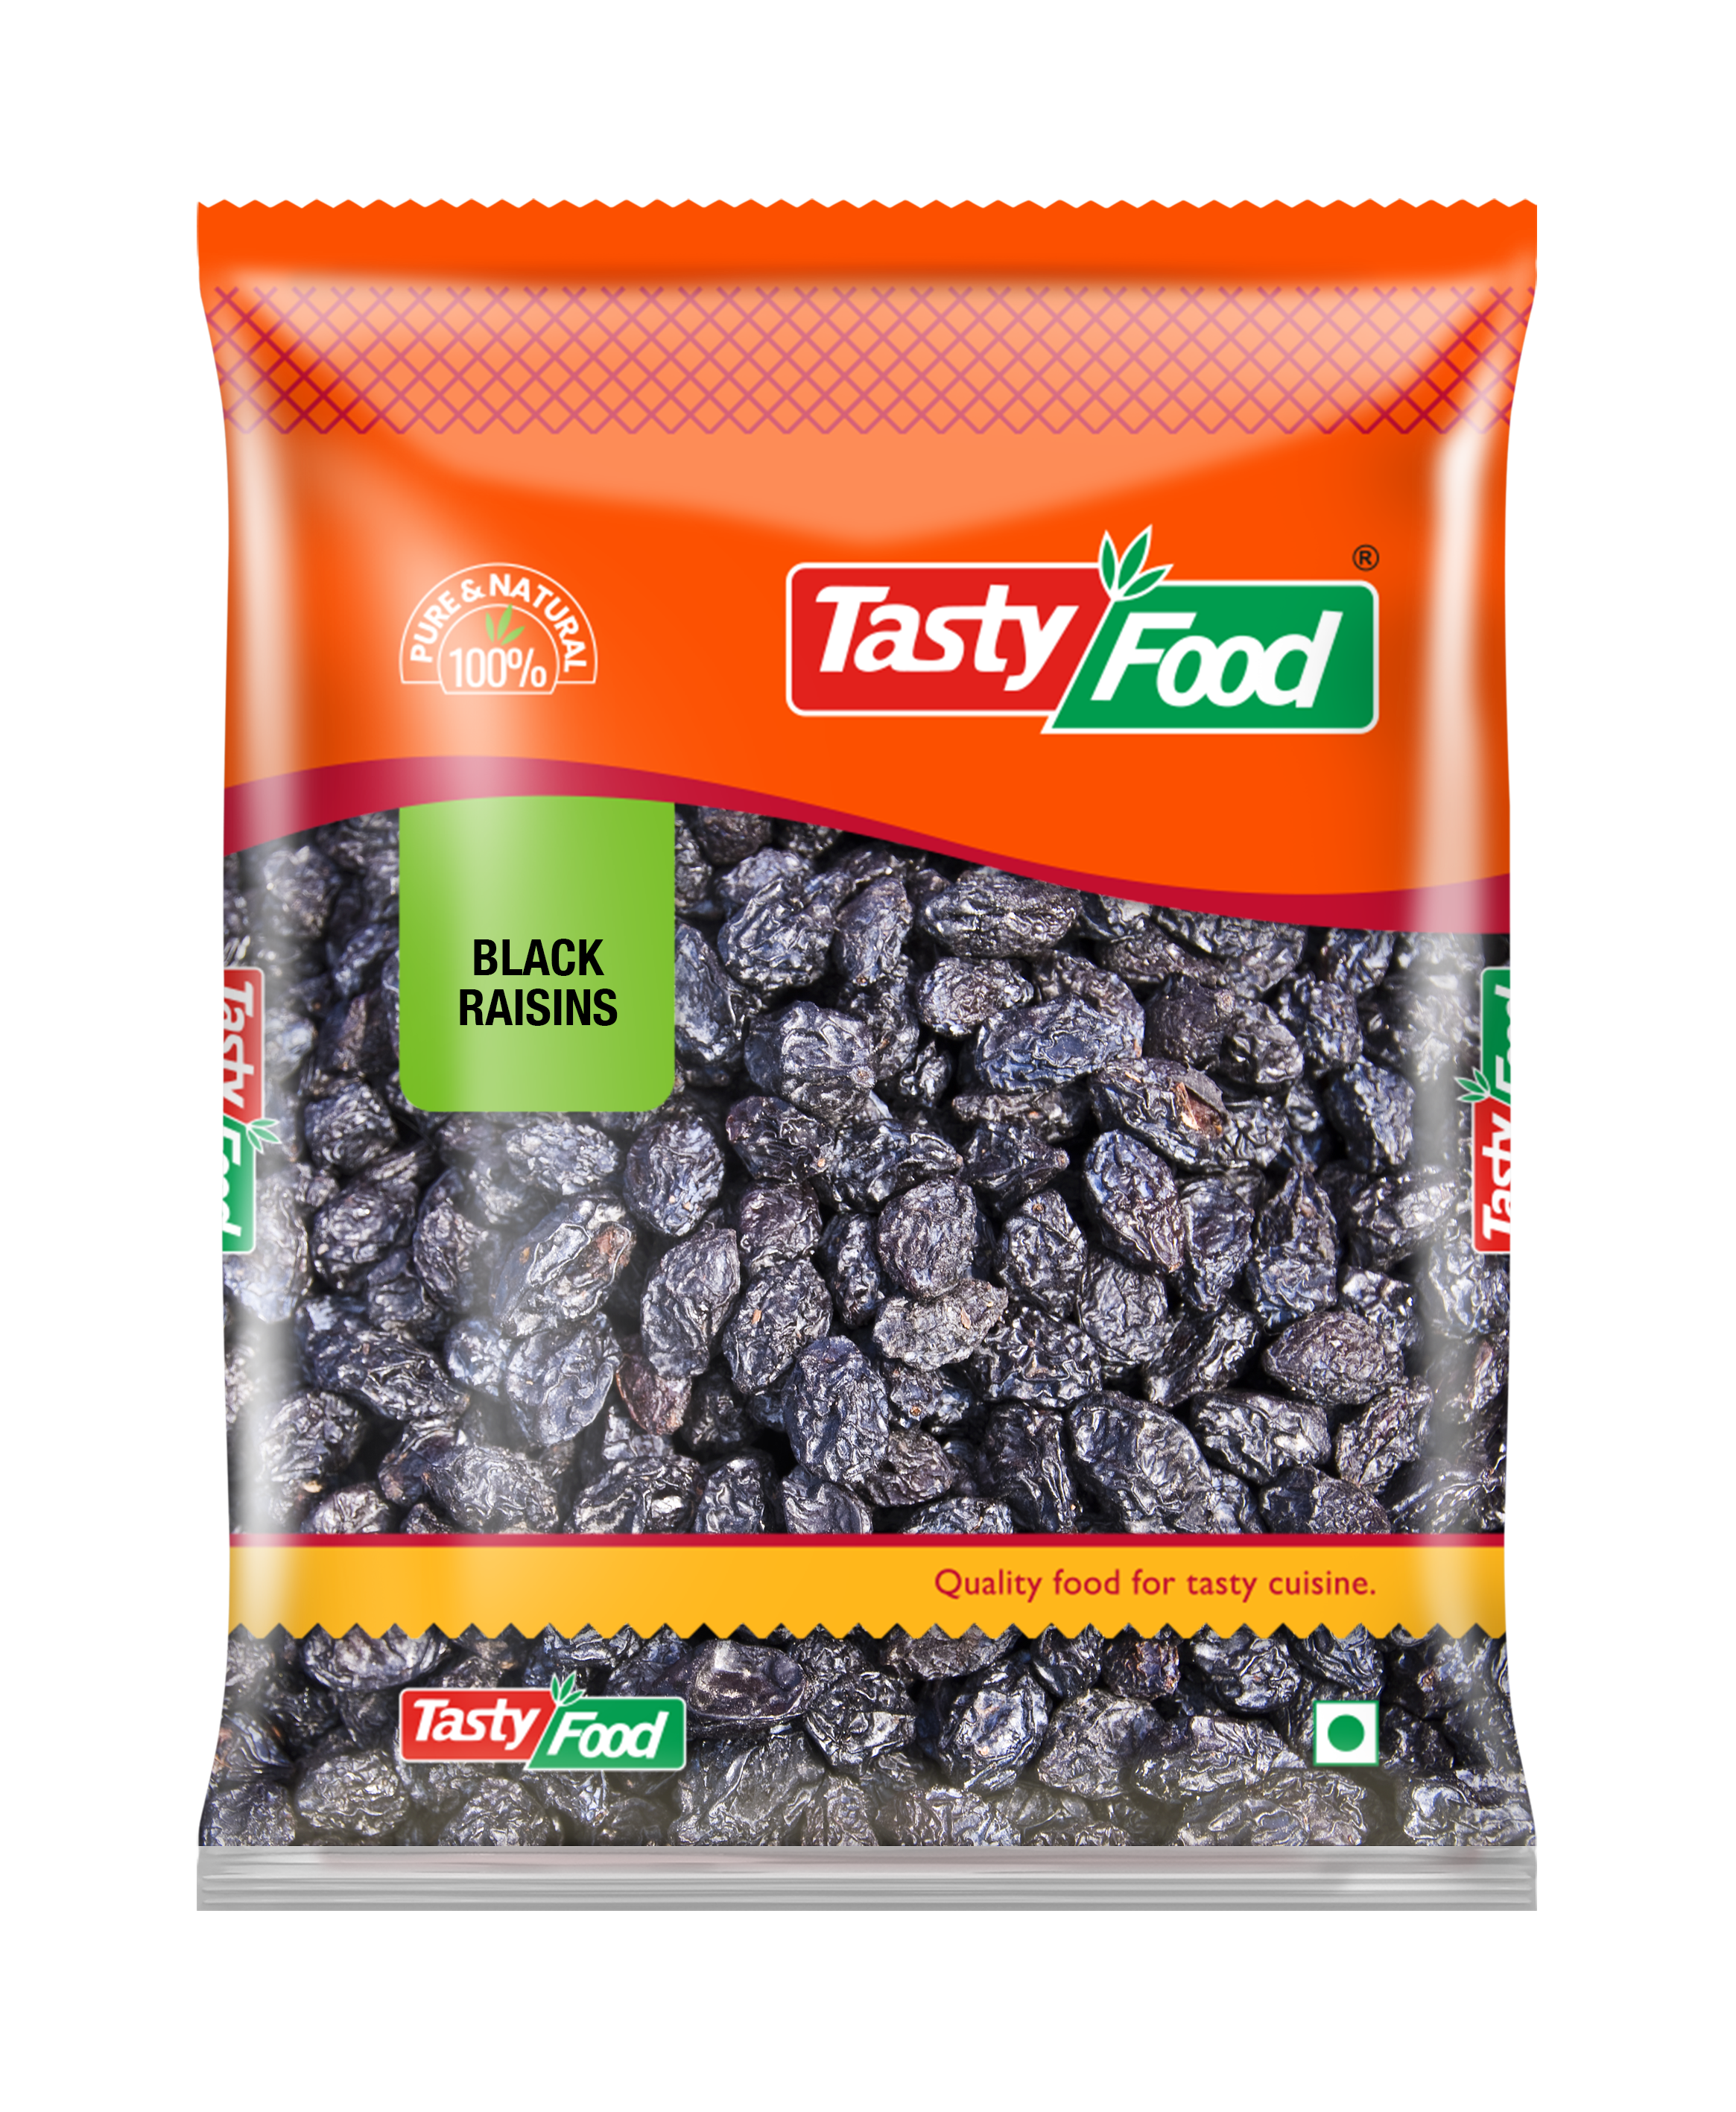 Tasty food black raisin (kismis) 200 gm